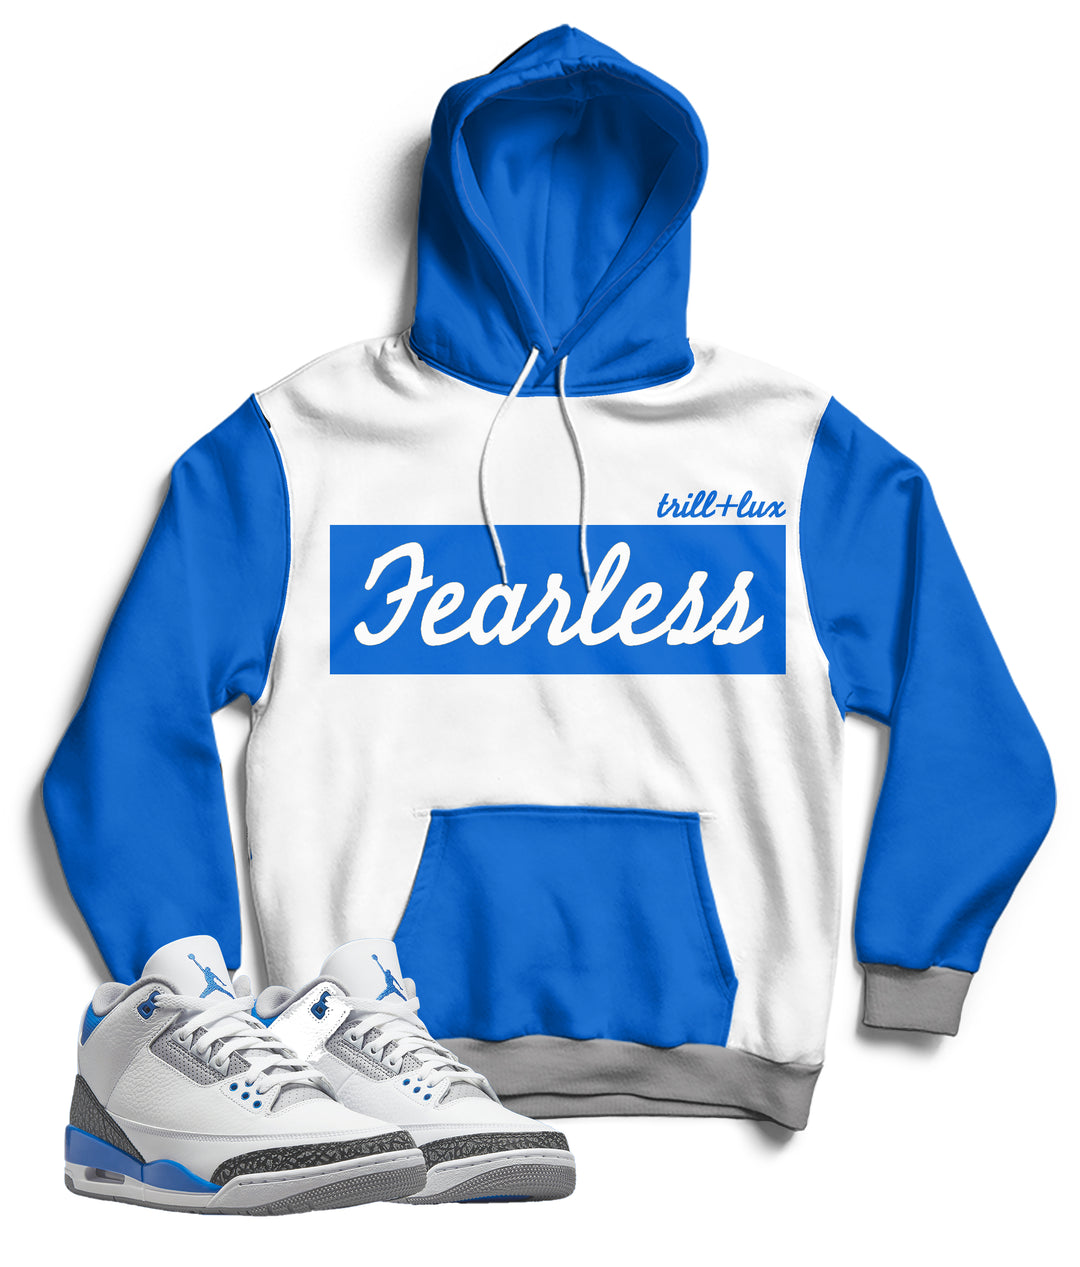 Fearless | Retro Jordan 3 Racer blue Inspired Hoodie